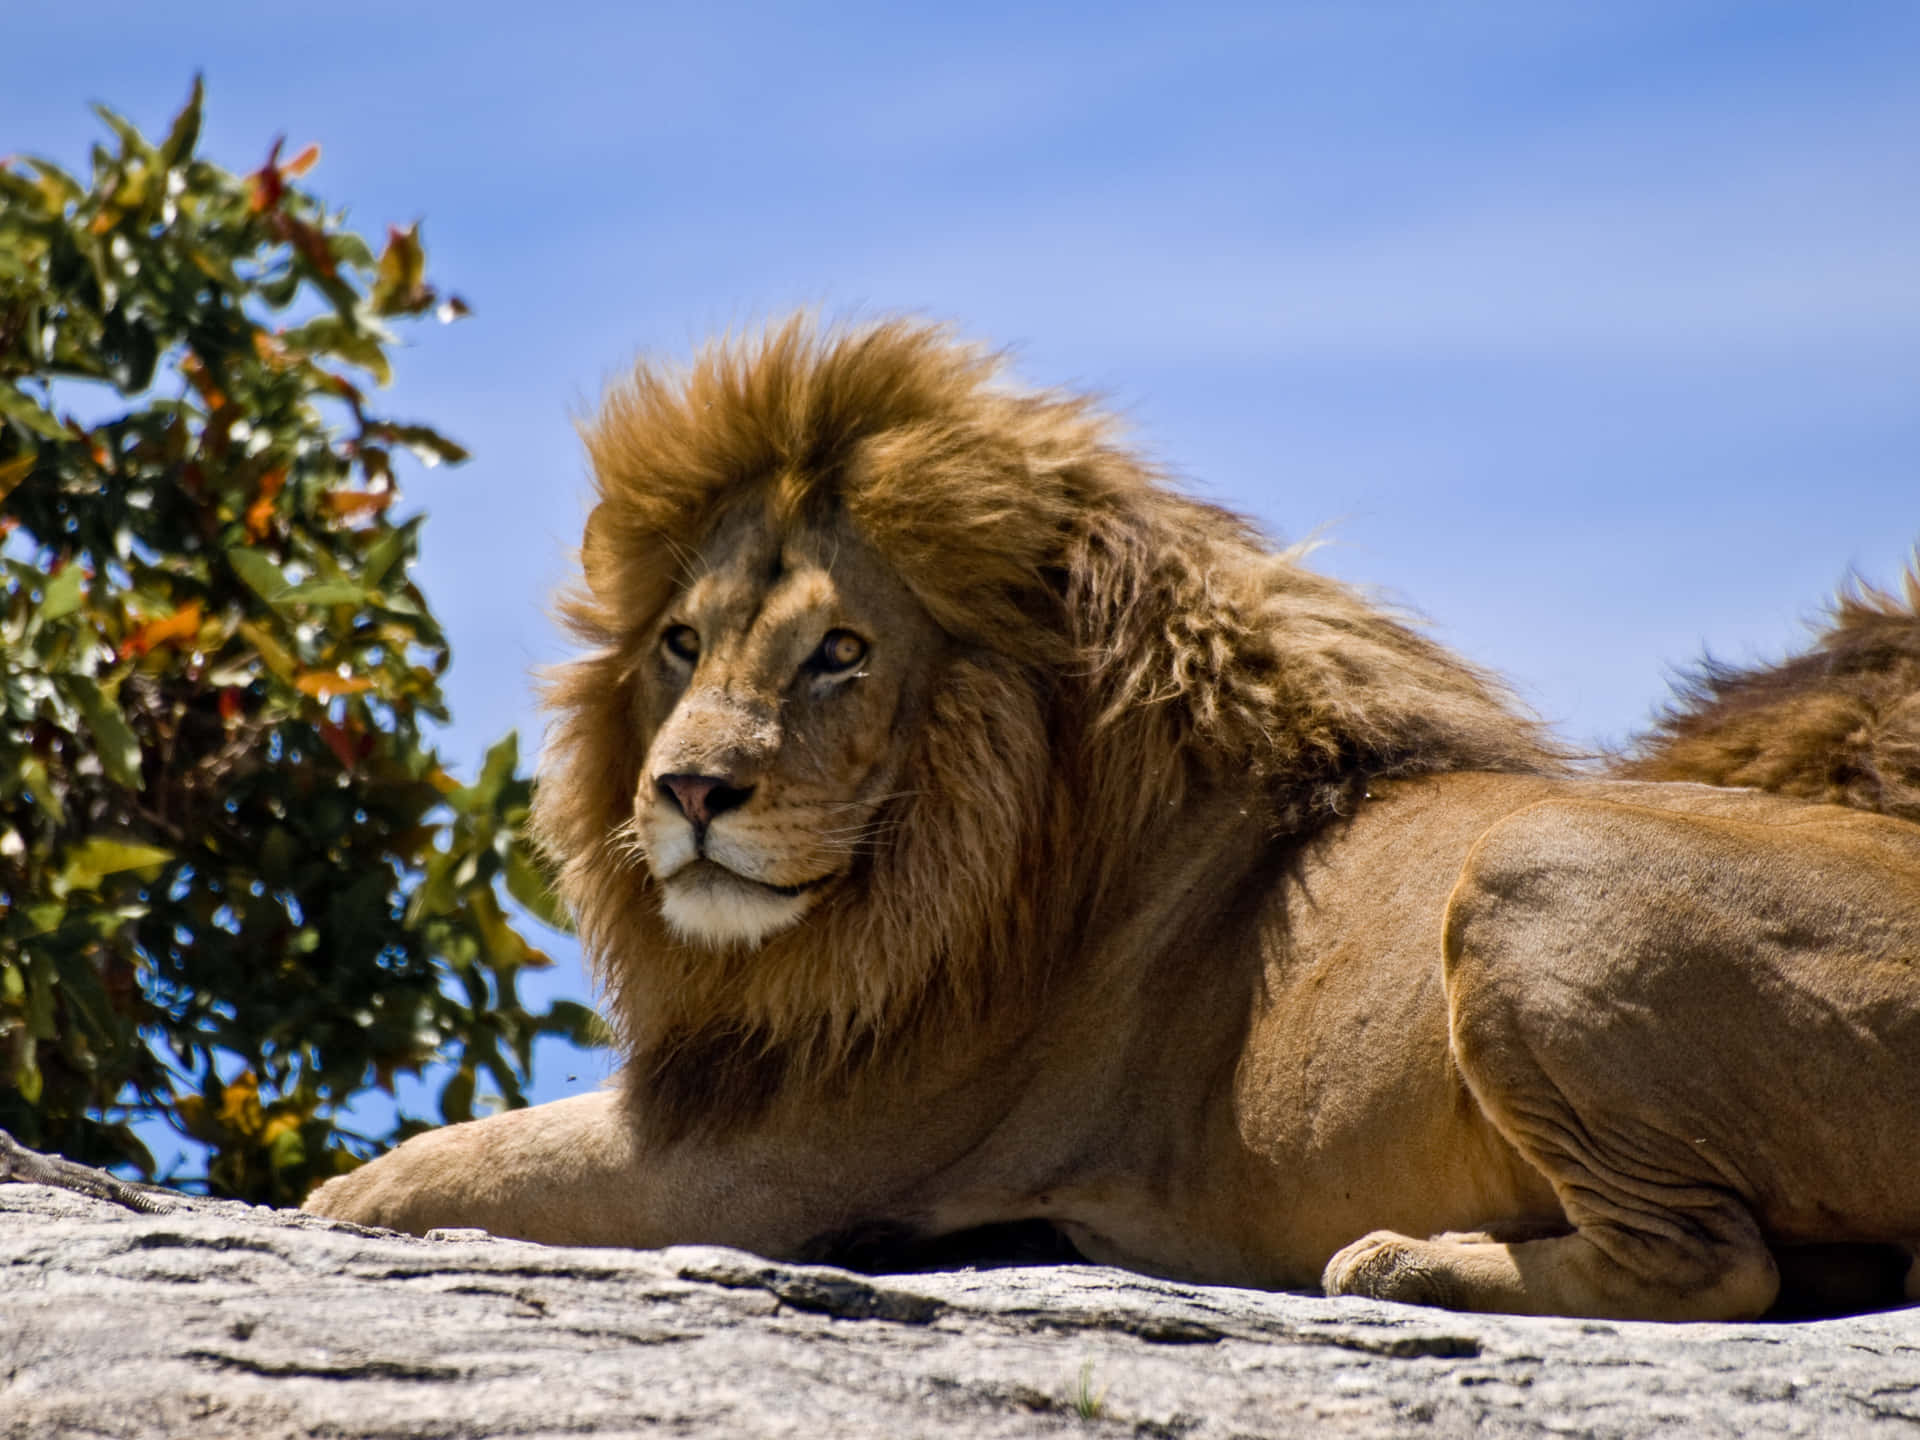 "A majestic Lion"